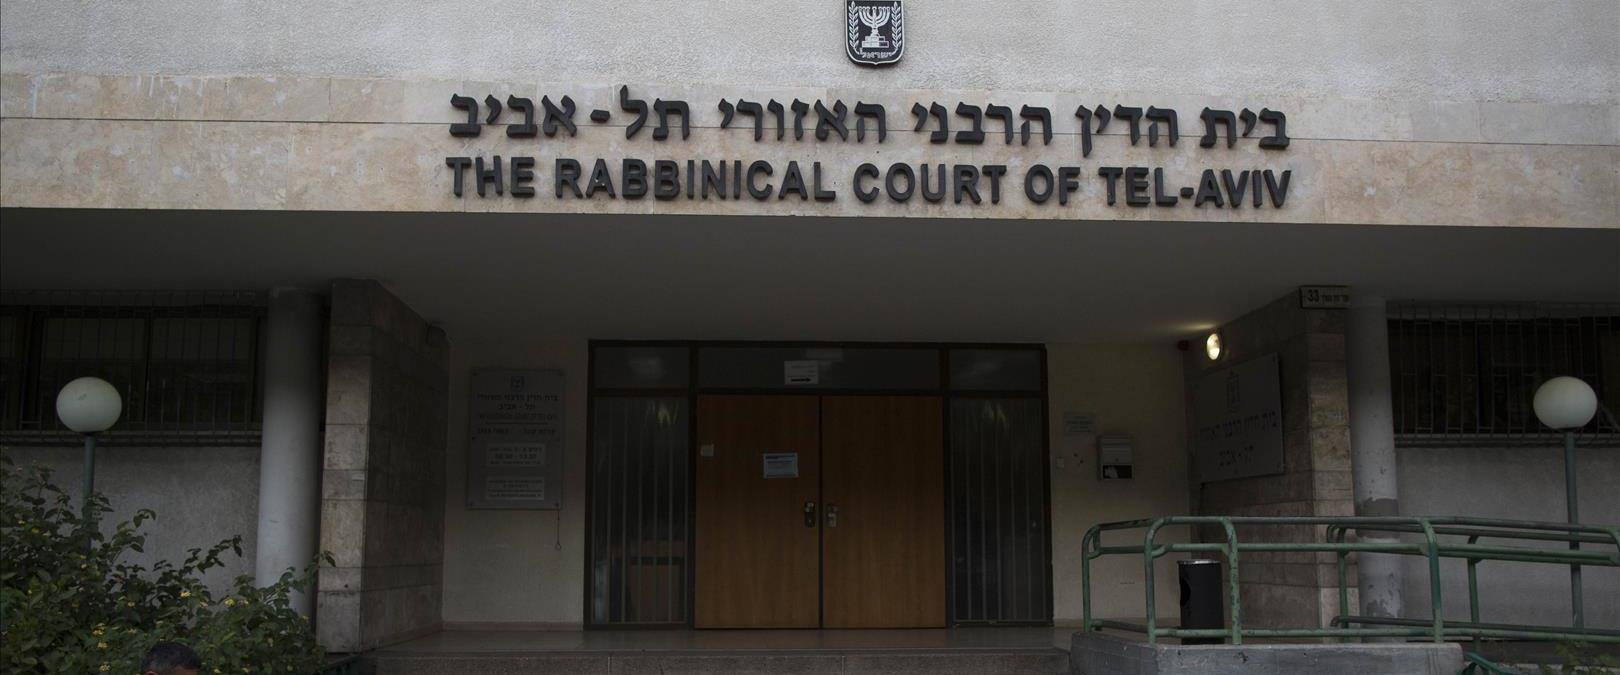 בית הדין הרבני בת"א